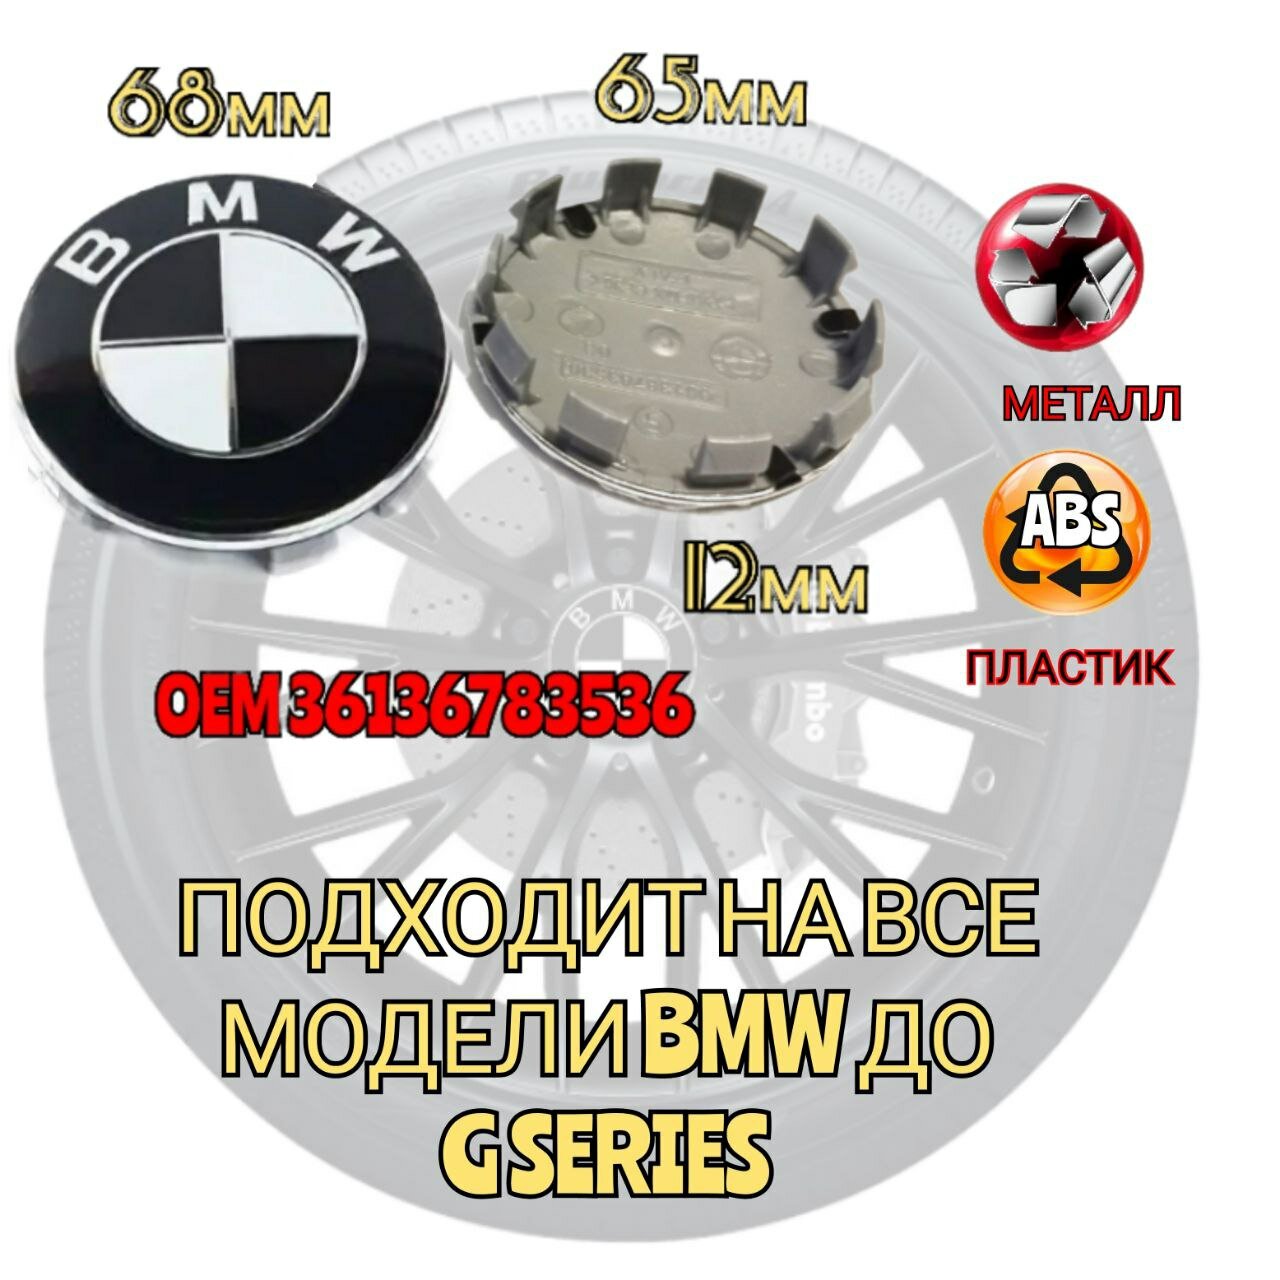 Заглушка диска/Колпачок ступицы литого диска BMW БМВ 68 -65 мм цвет черно-белый 4 штуки